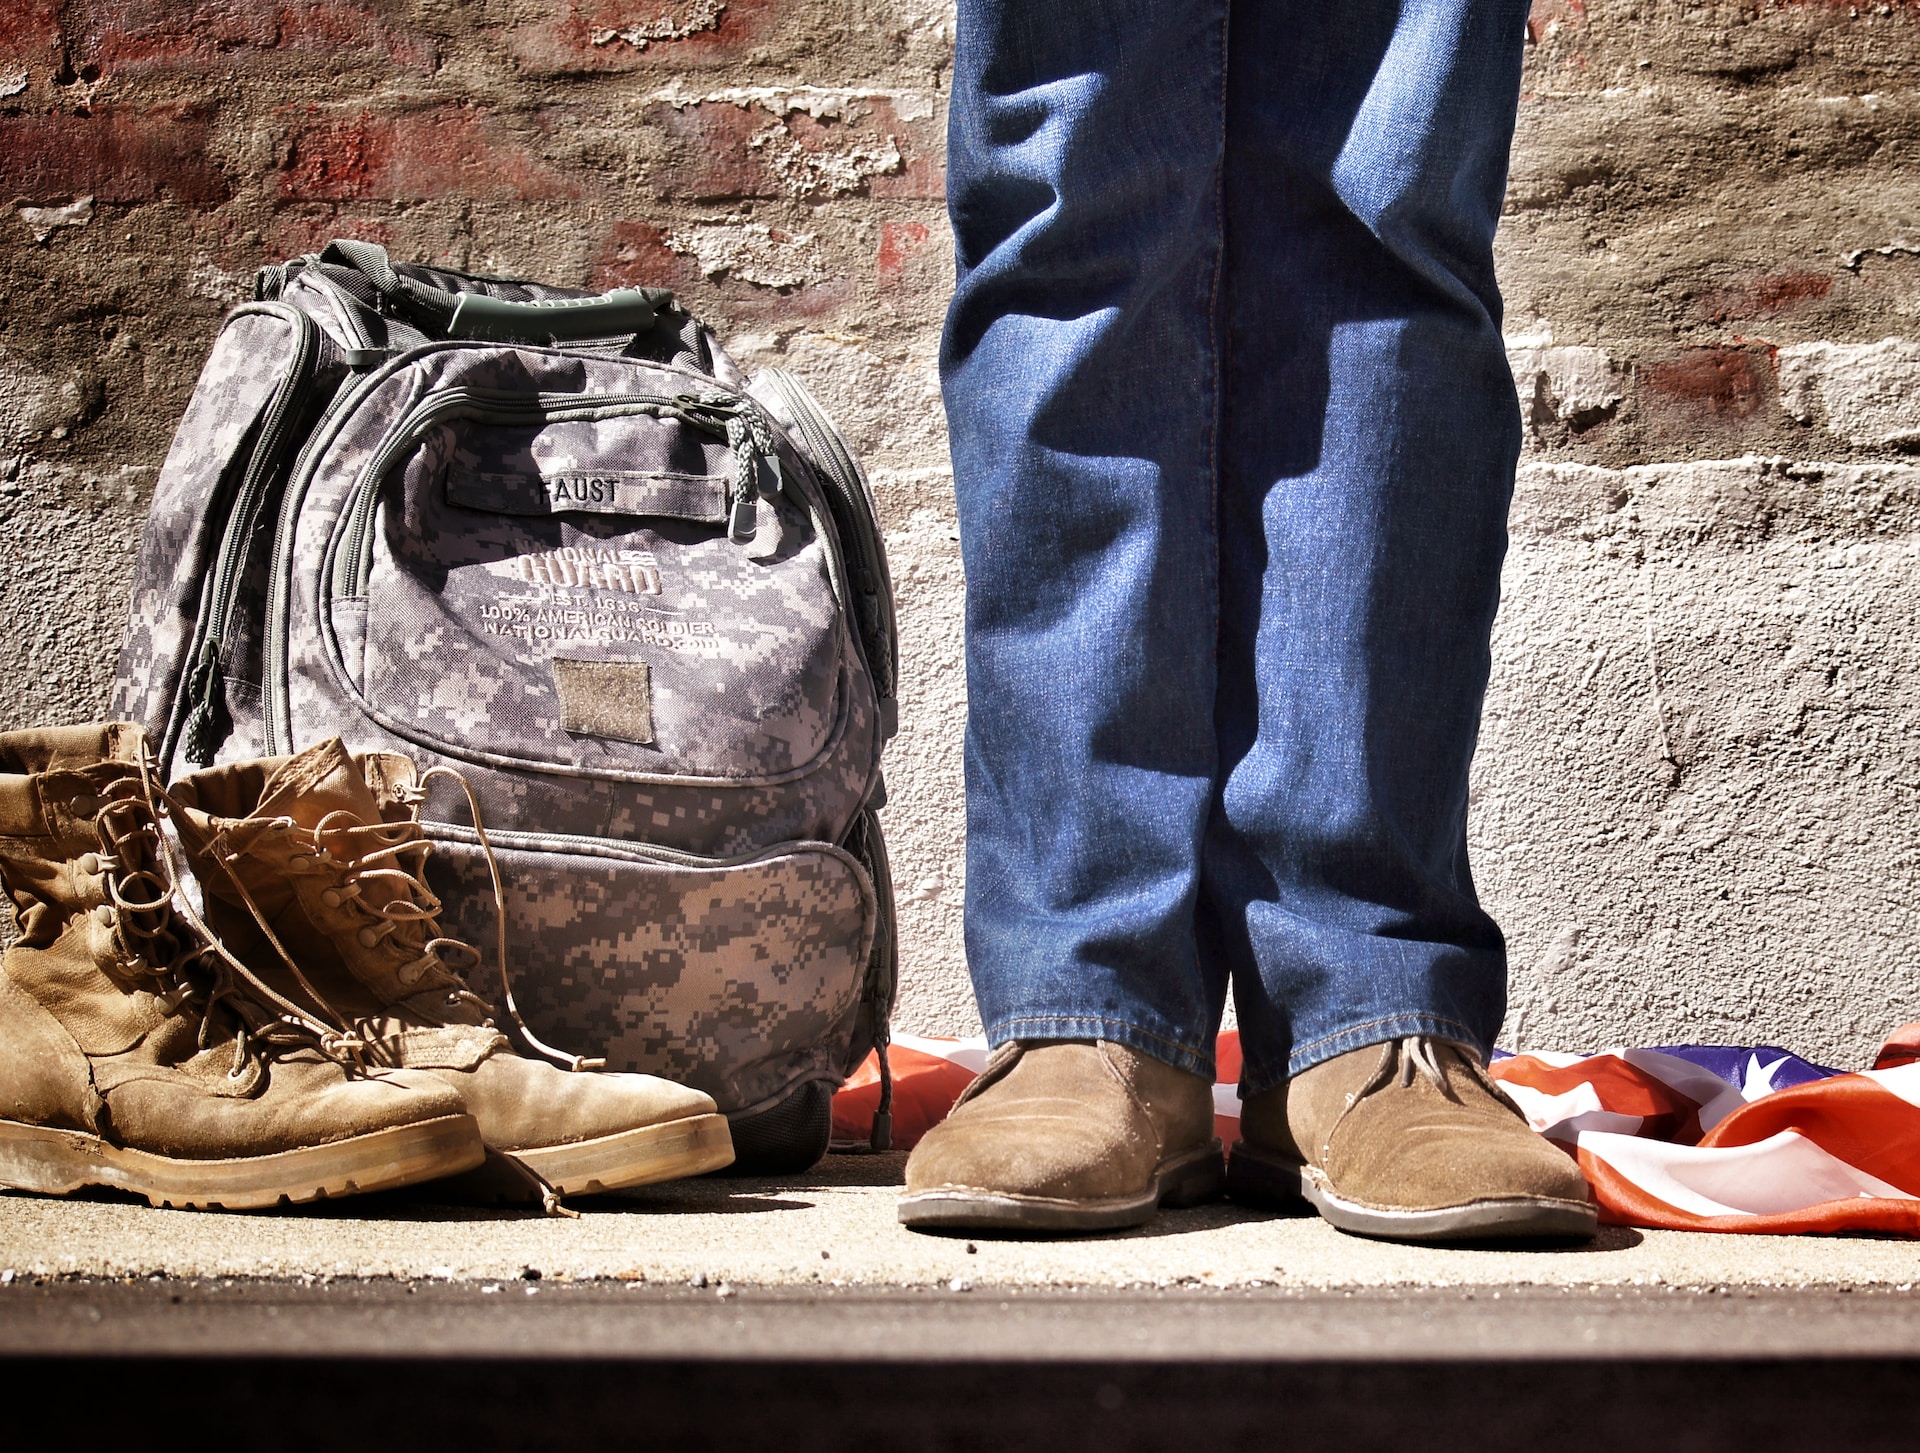 War Veterans: The Reality of Managing Symptoms of PTSD